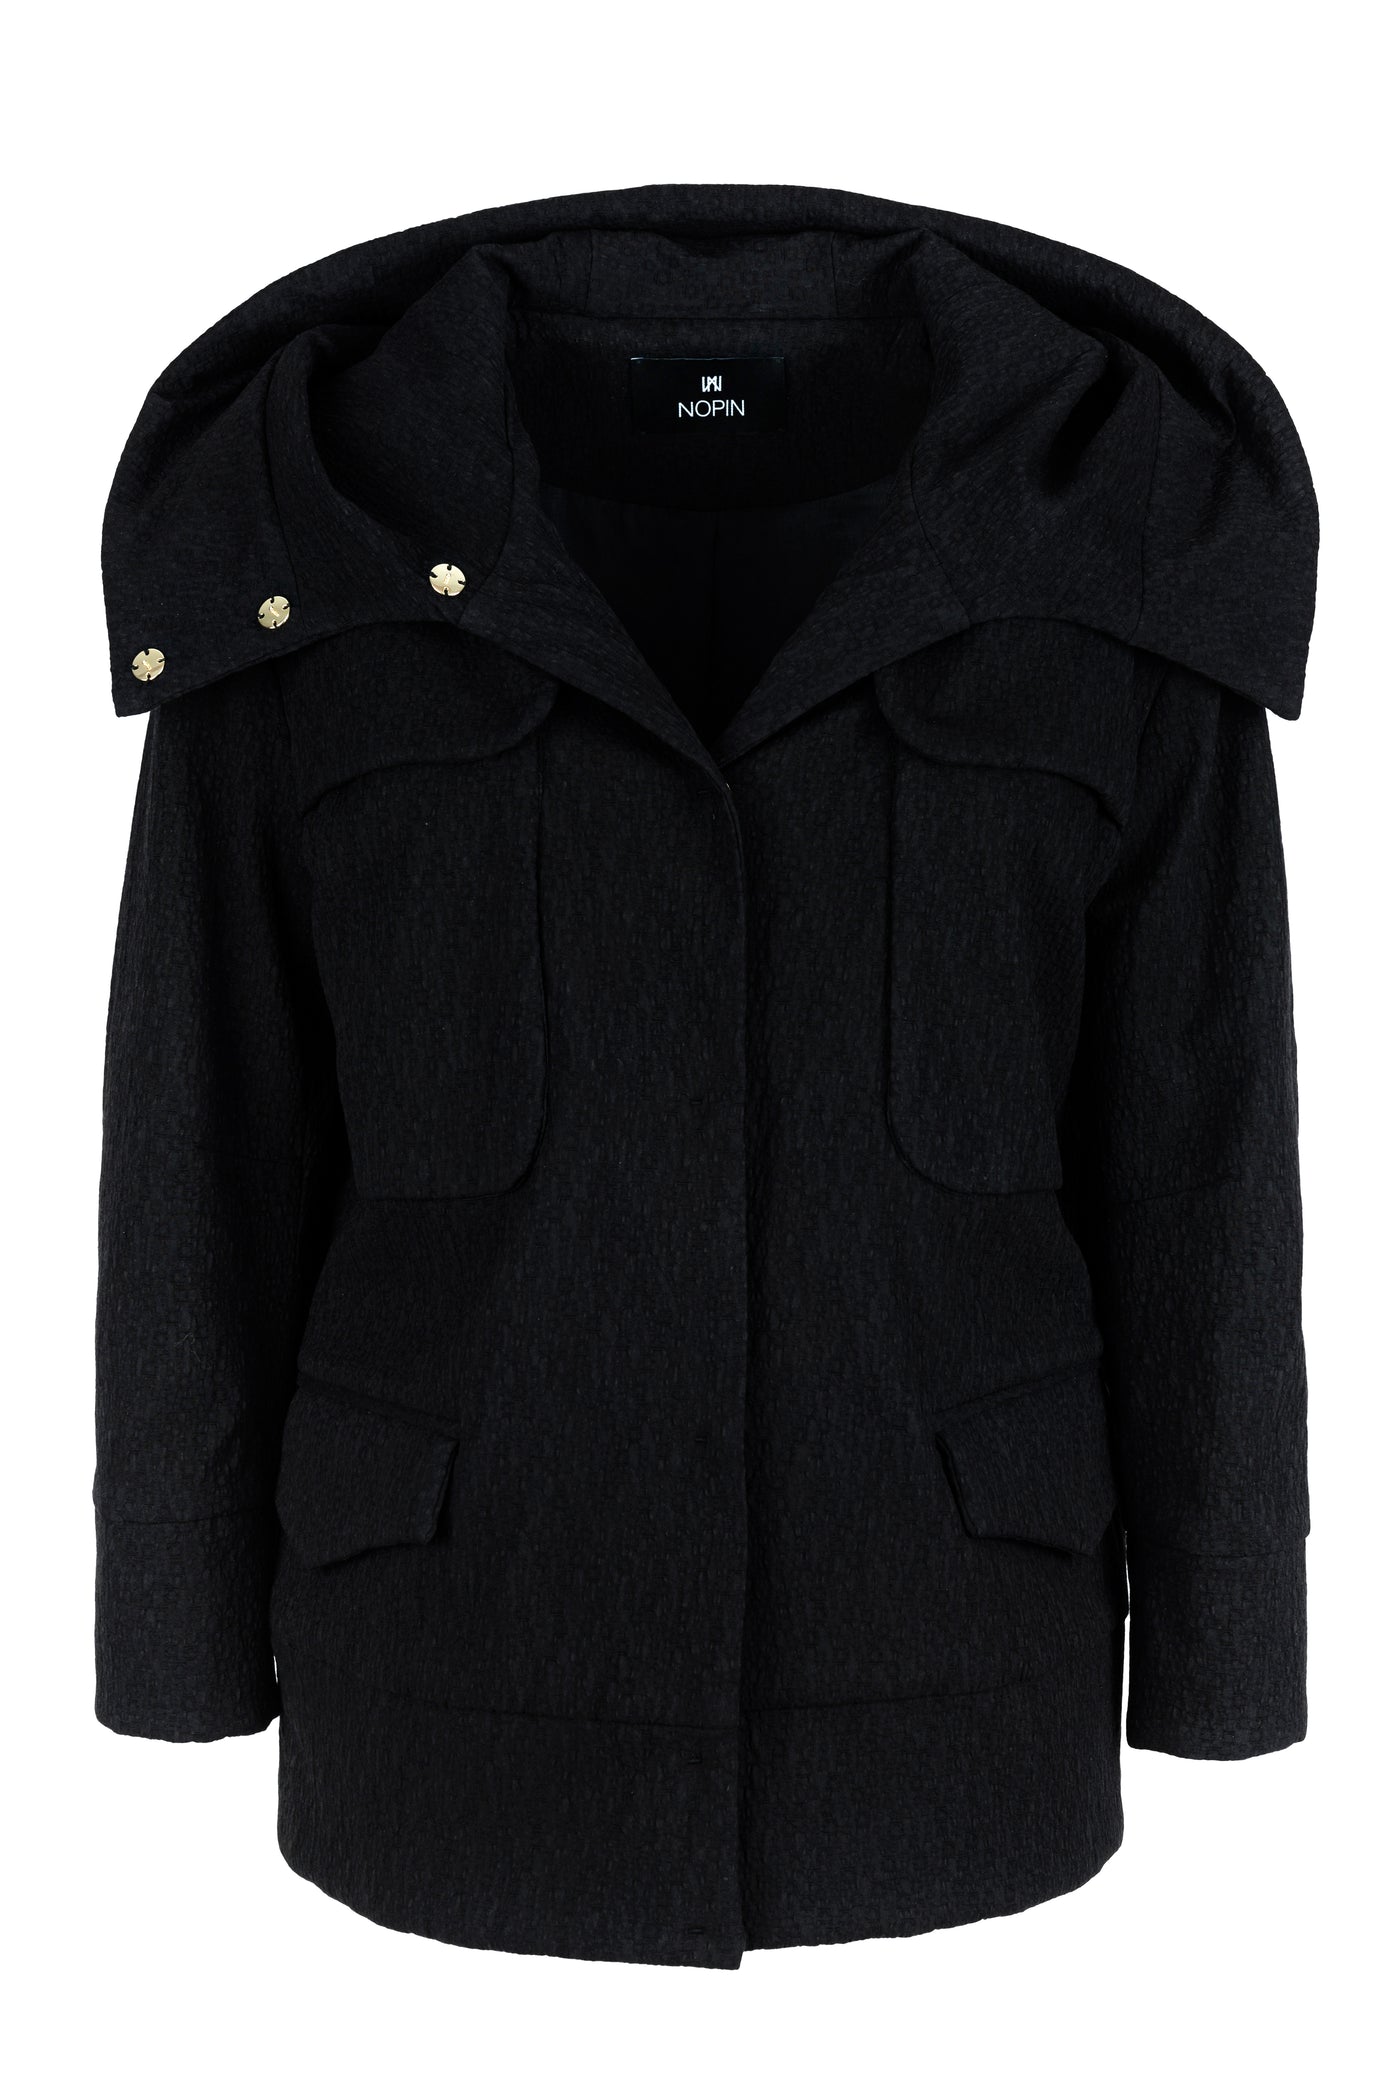 Oversized Black Jacket with Hood